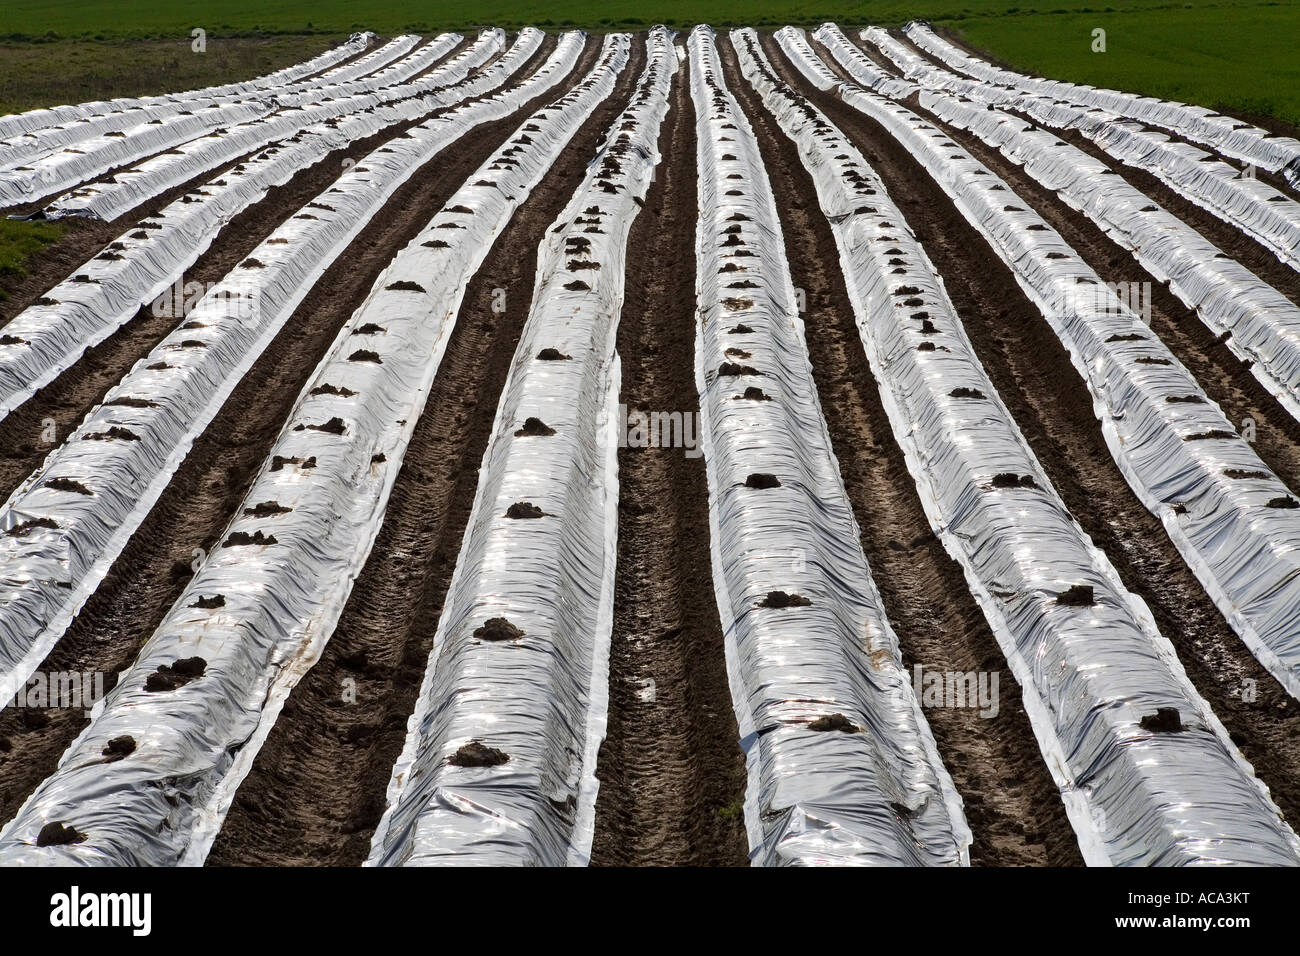 Campo di asparagi ricoperto di plastica, bassa Renania, Germania Foto Stock